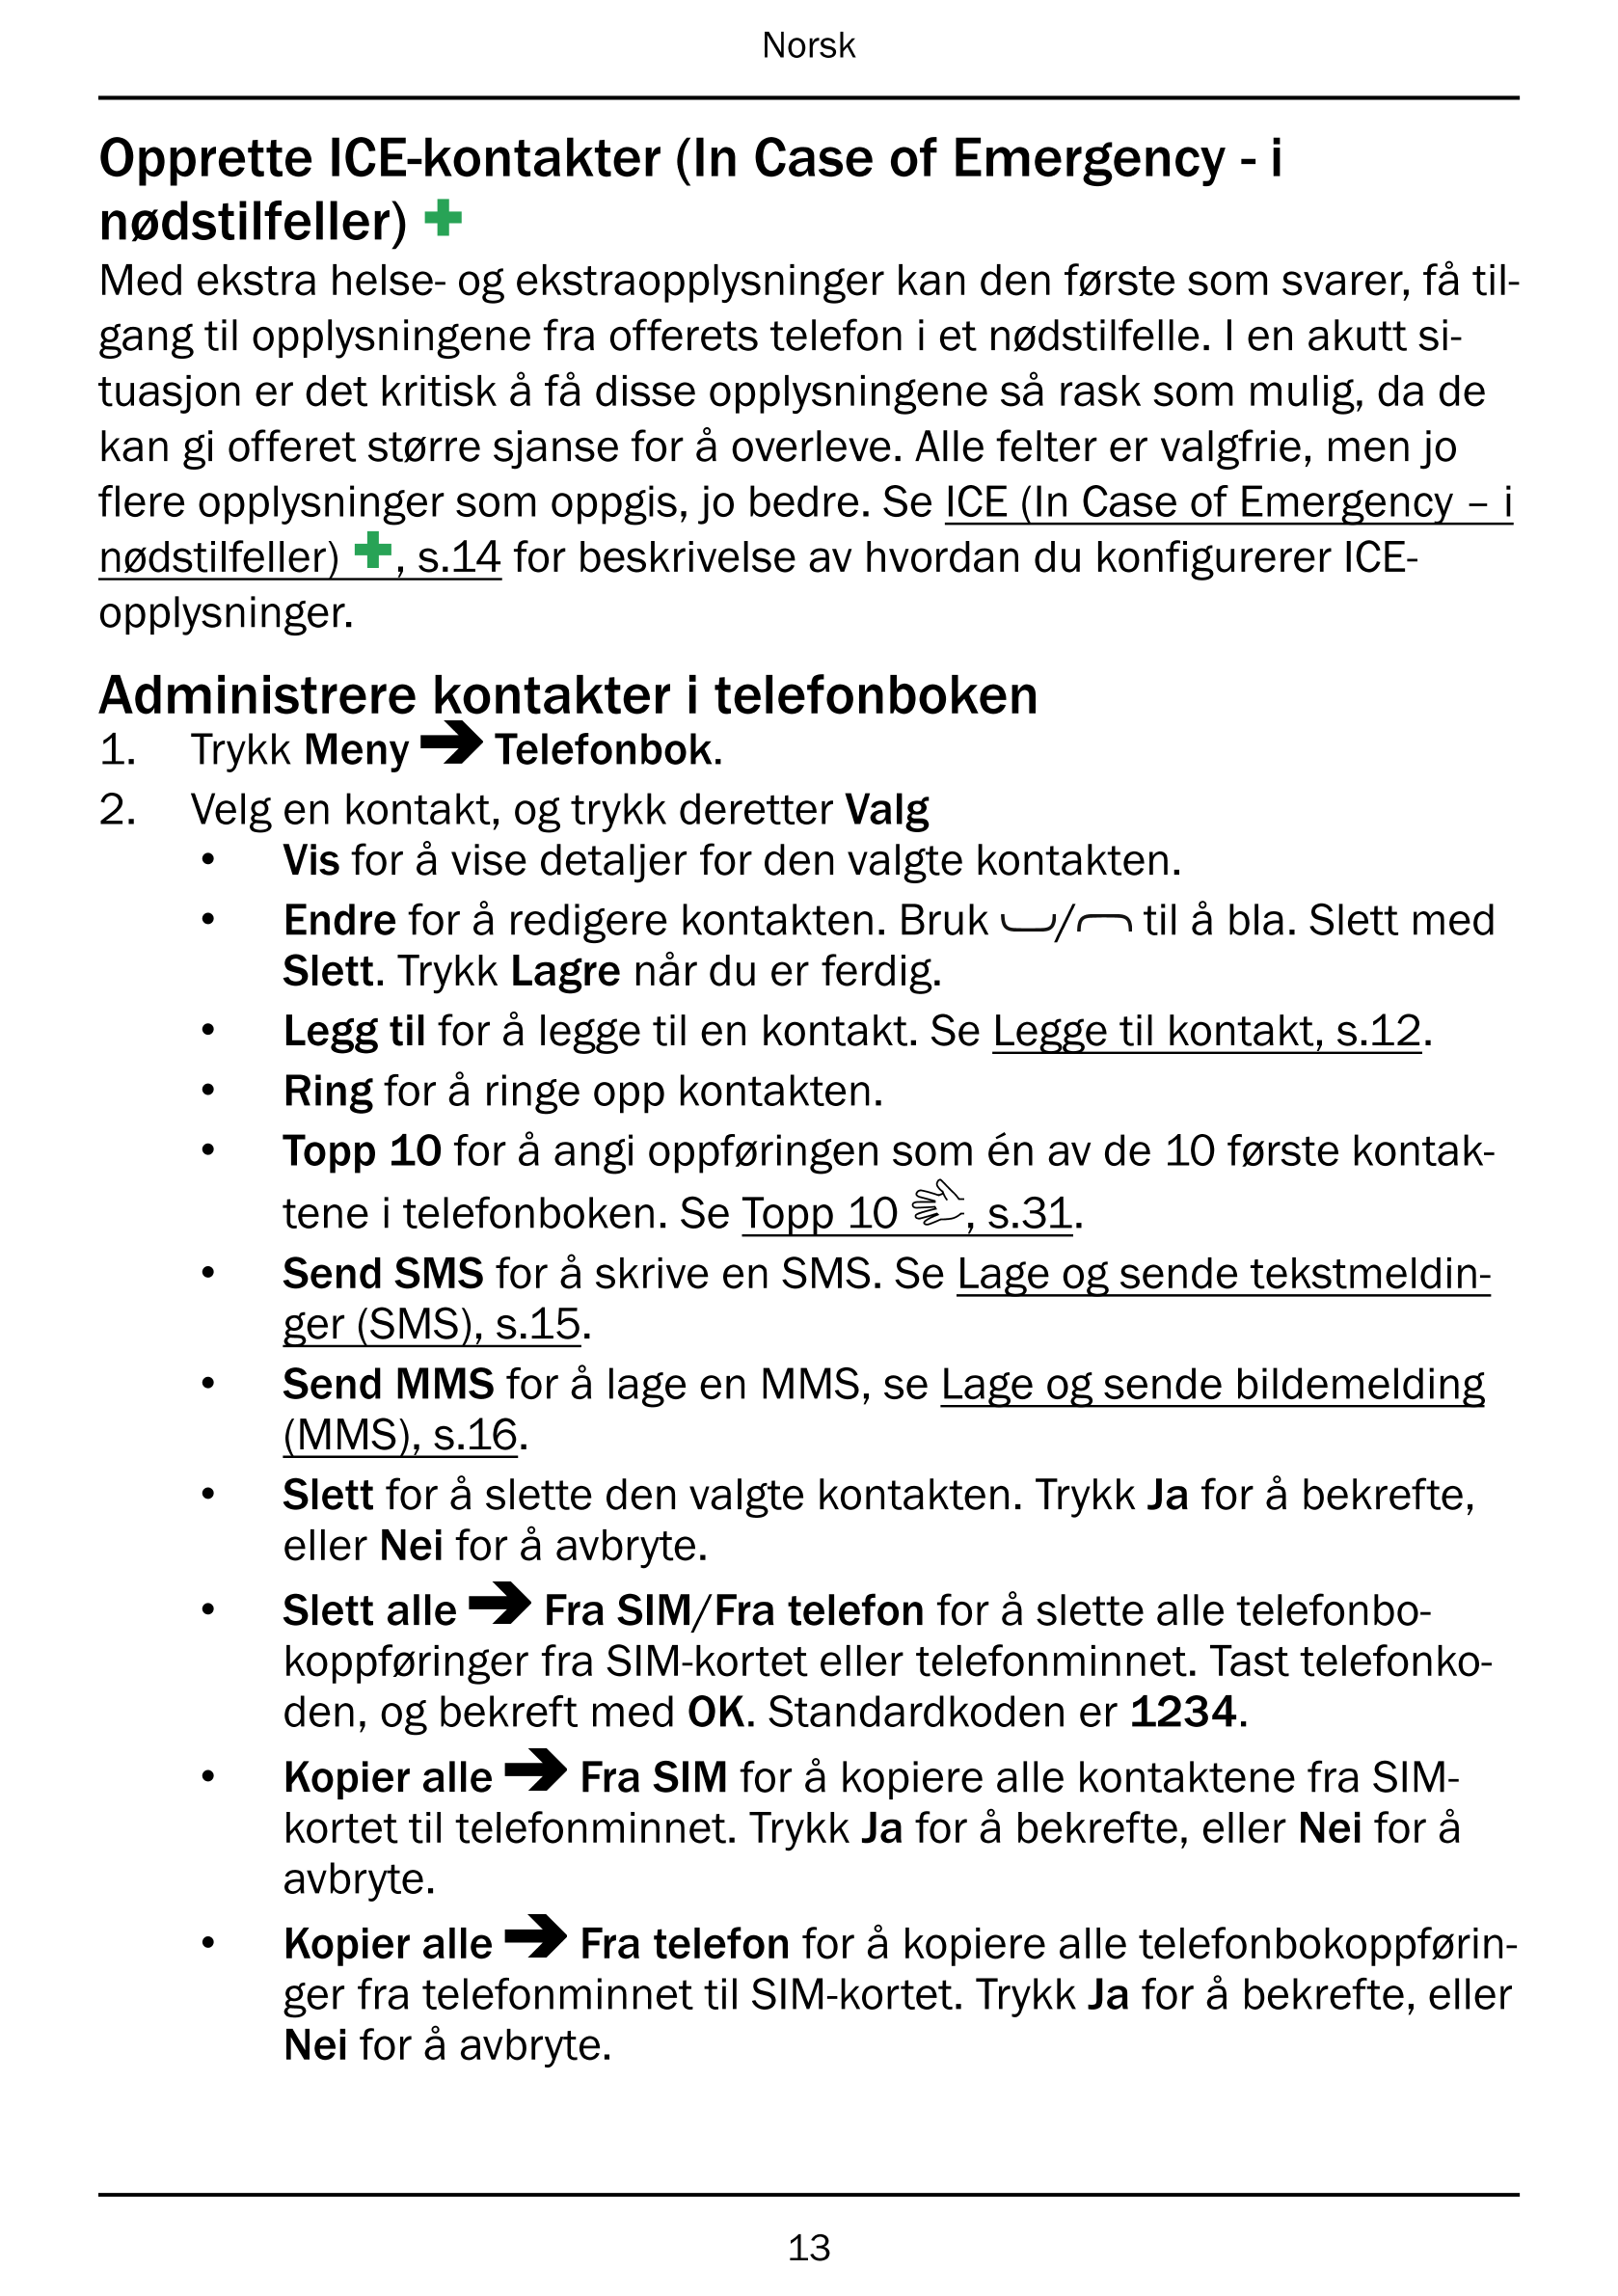 Norsk
Opprette ICE-kontakter (In Case of Emergency - i
nødstilfeller)
Med ekstra helse- og ekstraopplysninger kan den første som